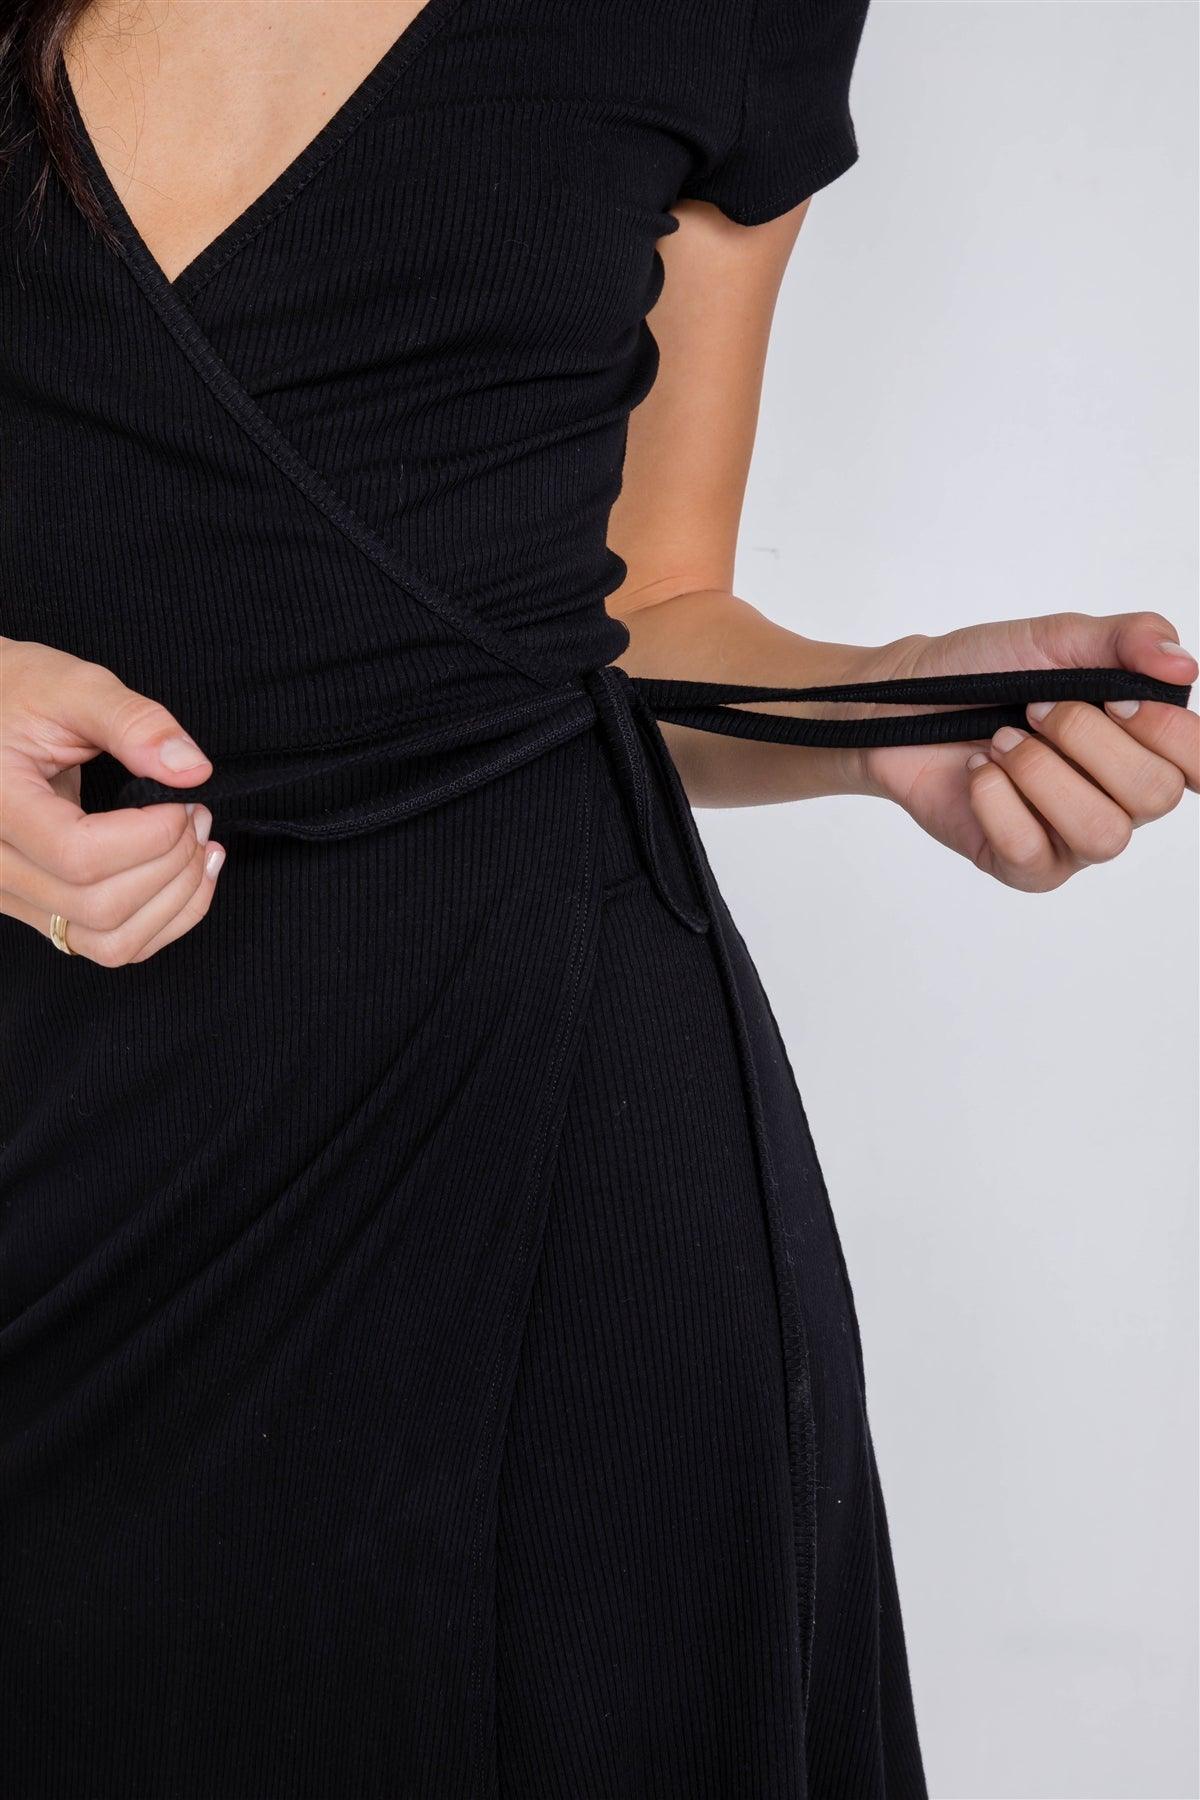 Black Cotton Ribbed V-Neck Casual Wrap Mini Dress /2-1-1